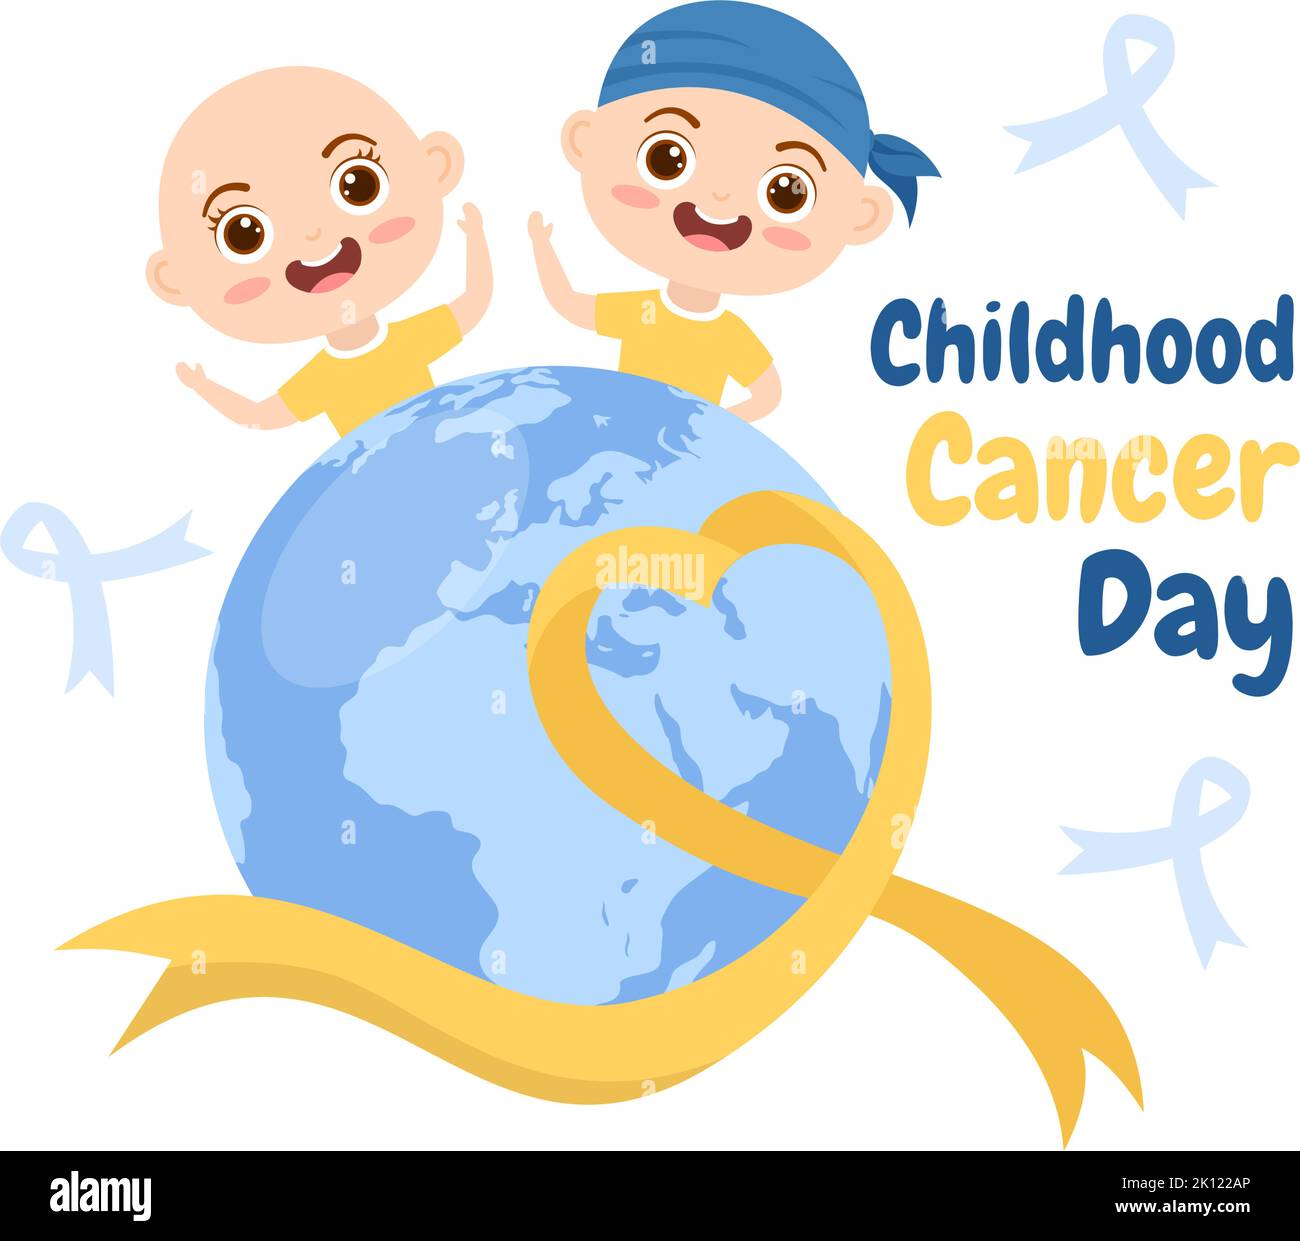 Handgezeichnetes Cartoon-Bild zum Internationalen Tag des Krebses im Kindesalter am 15. Februar zur Spendenbeschaffung, zur Förderung der Prävention und zur ausdrücklichen Unterstützung Stock Vektor